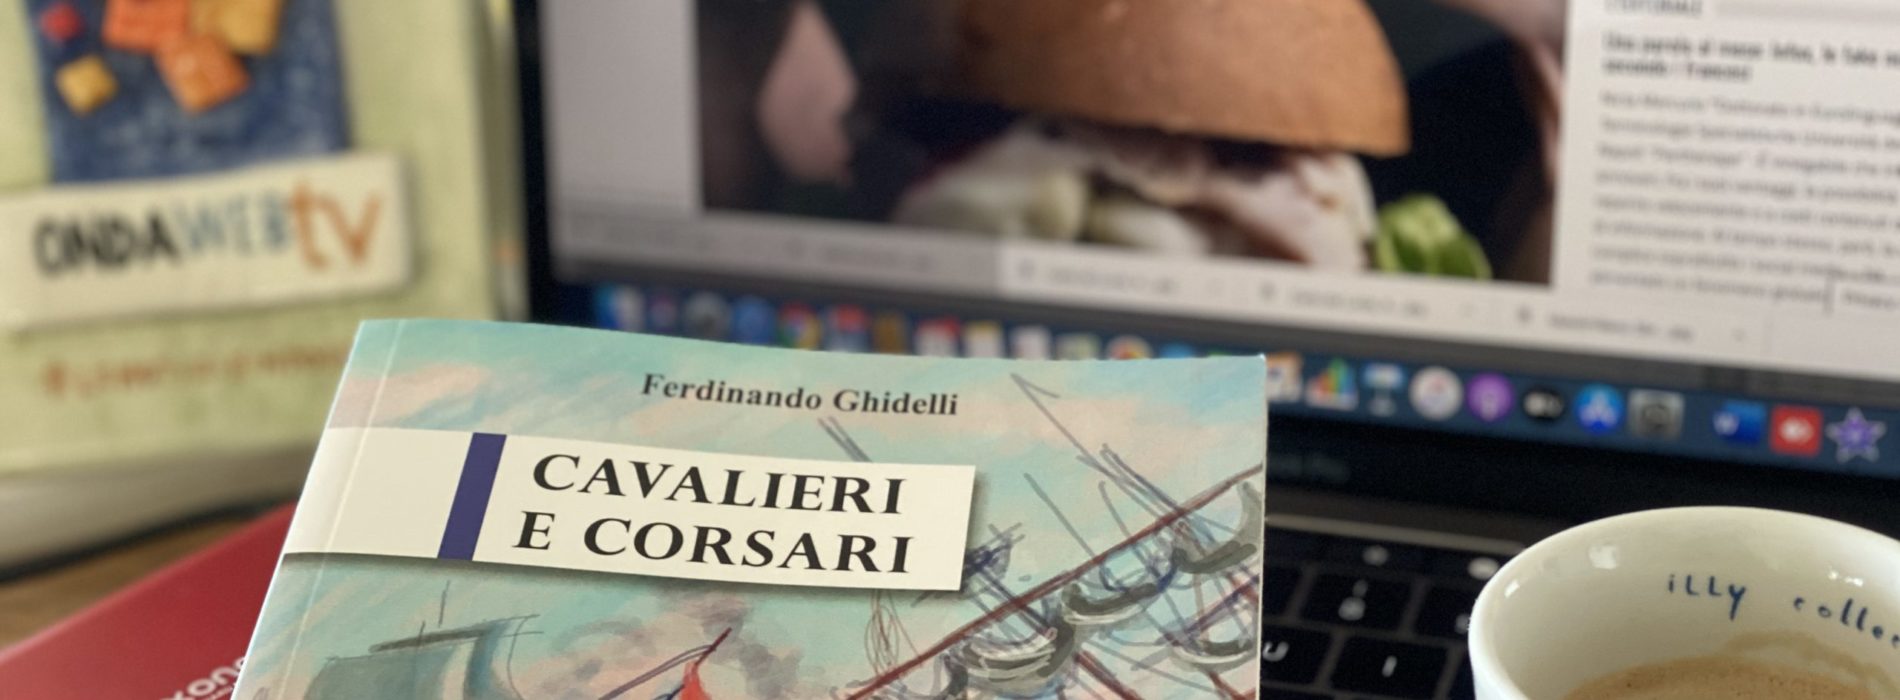 Libri in Redazione. Cavalieri e Corsari di Ferdinando Ghidelli